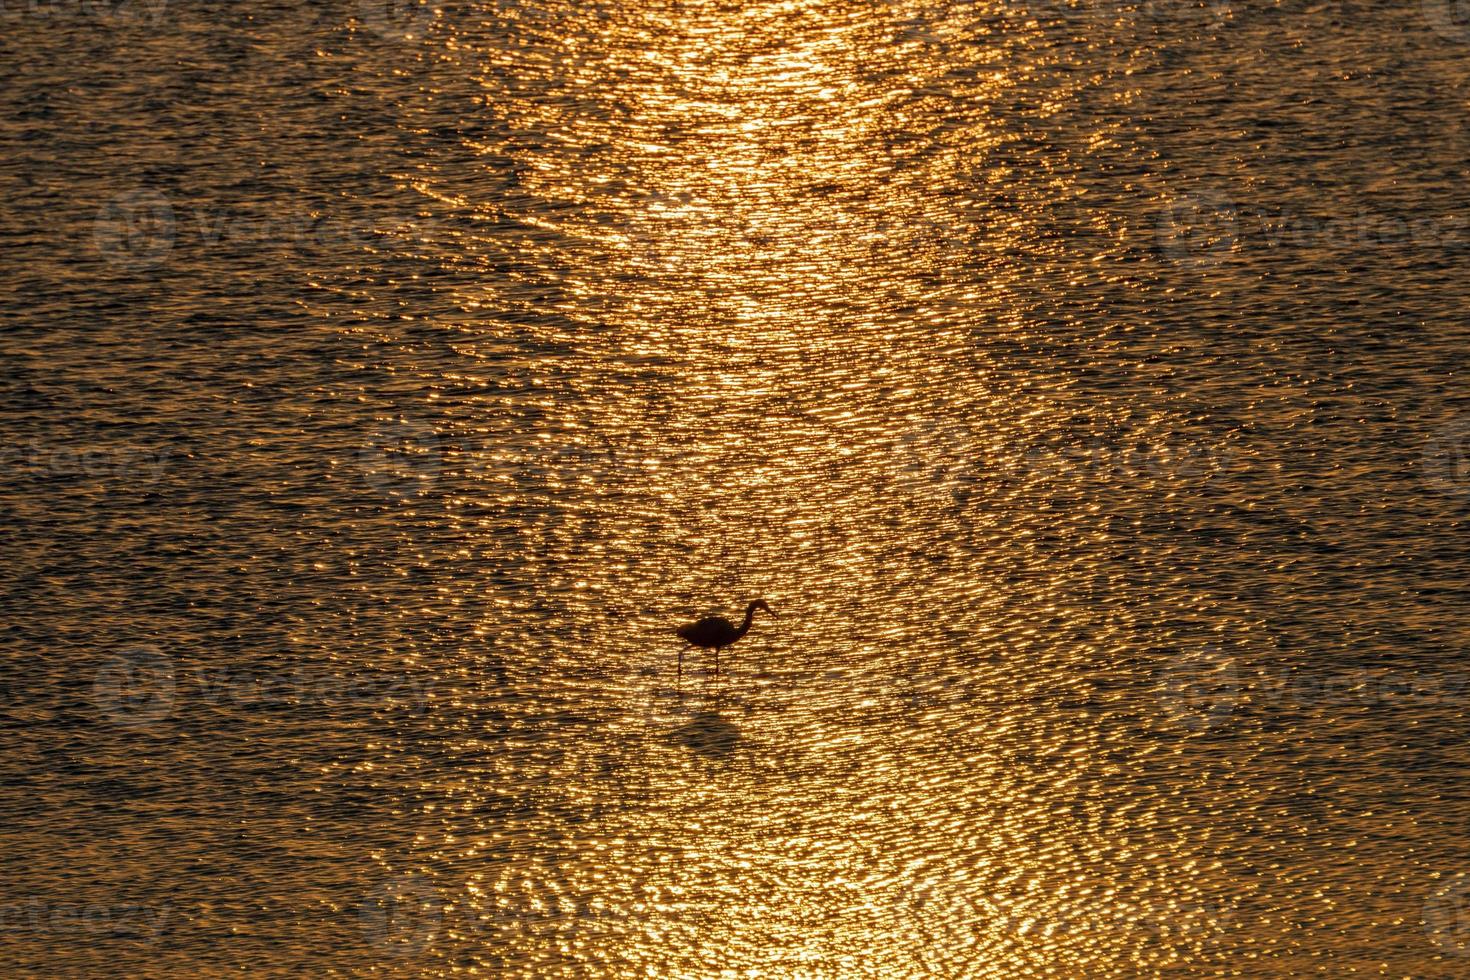 bianca Airone a caccia a tramonto nel il palude foto